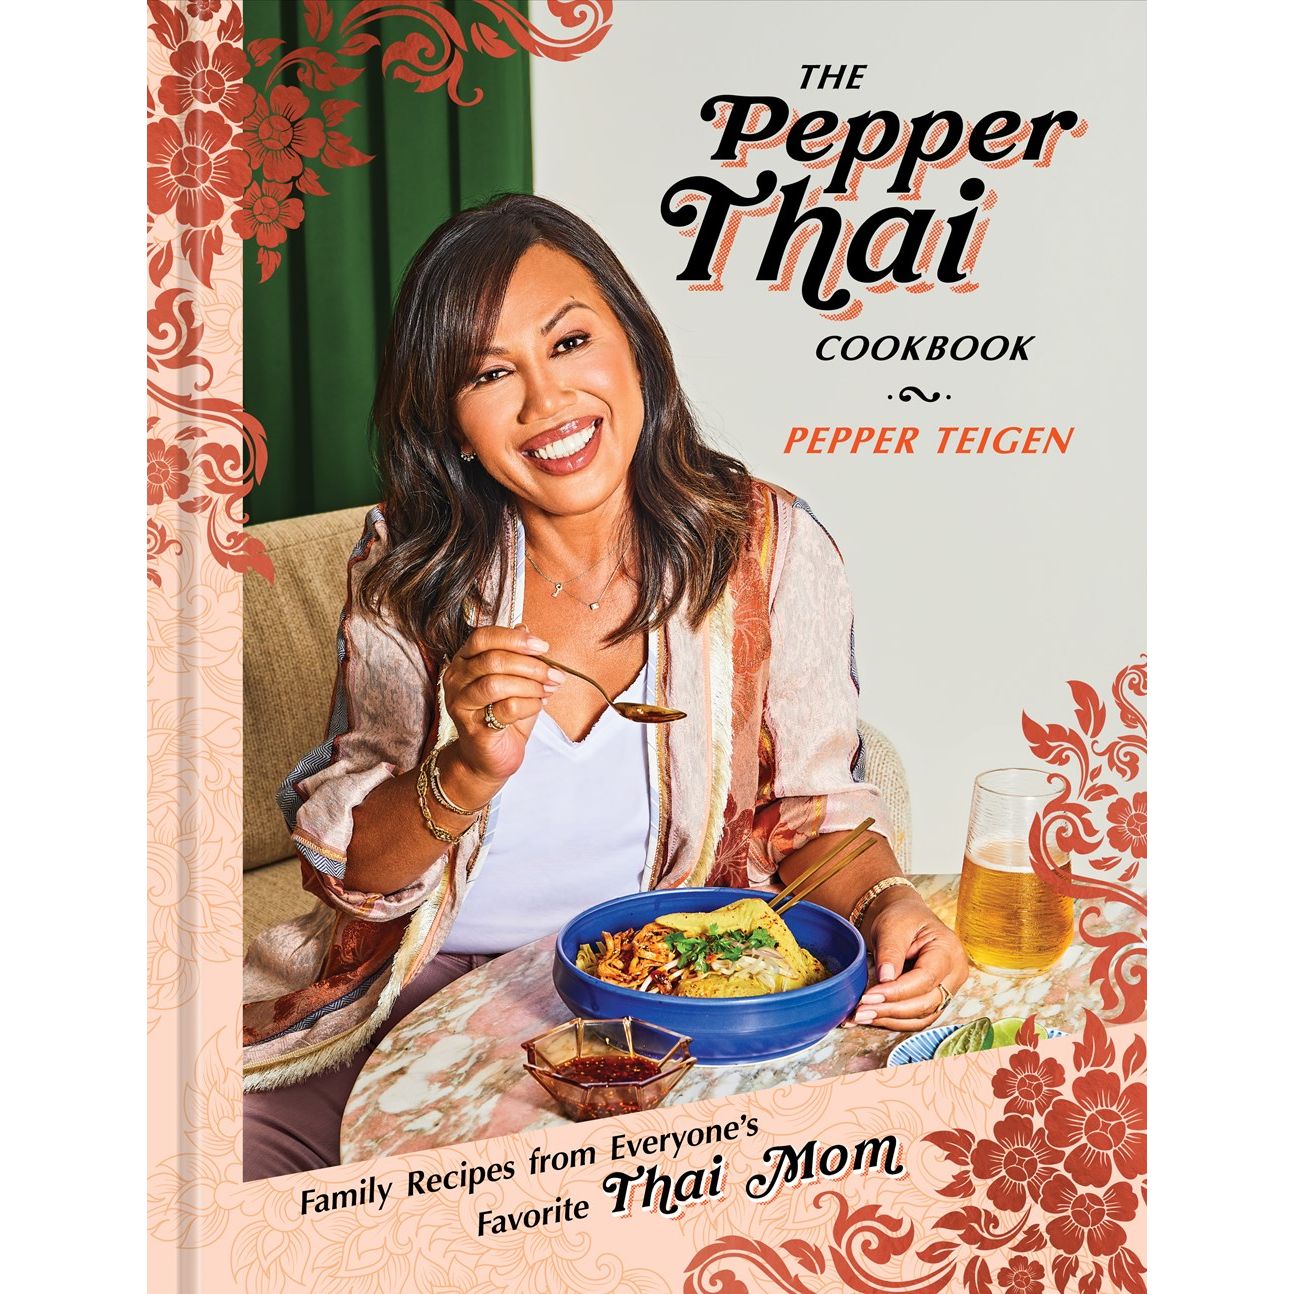 The Pepper Thai Cookbook (Pepper Teigen)